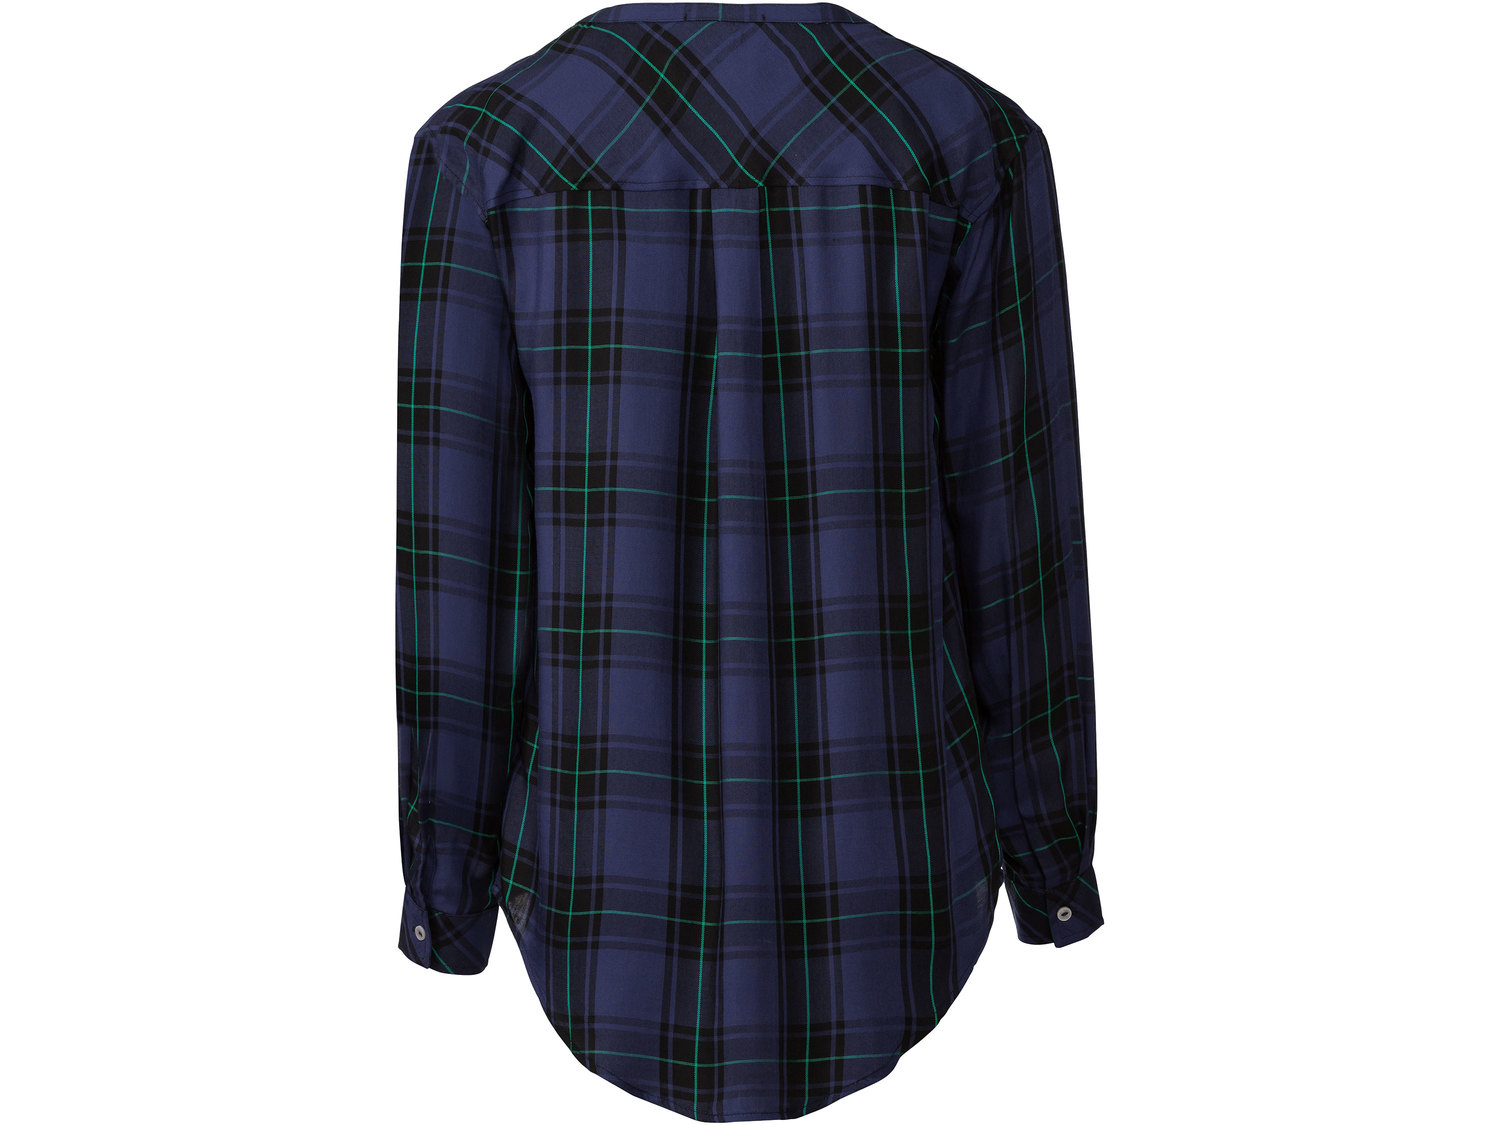 Bluzka z wiskozy Esmara, cena 34,99 PLN 
- przedłużany tył
- dekolt w kształcie ...